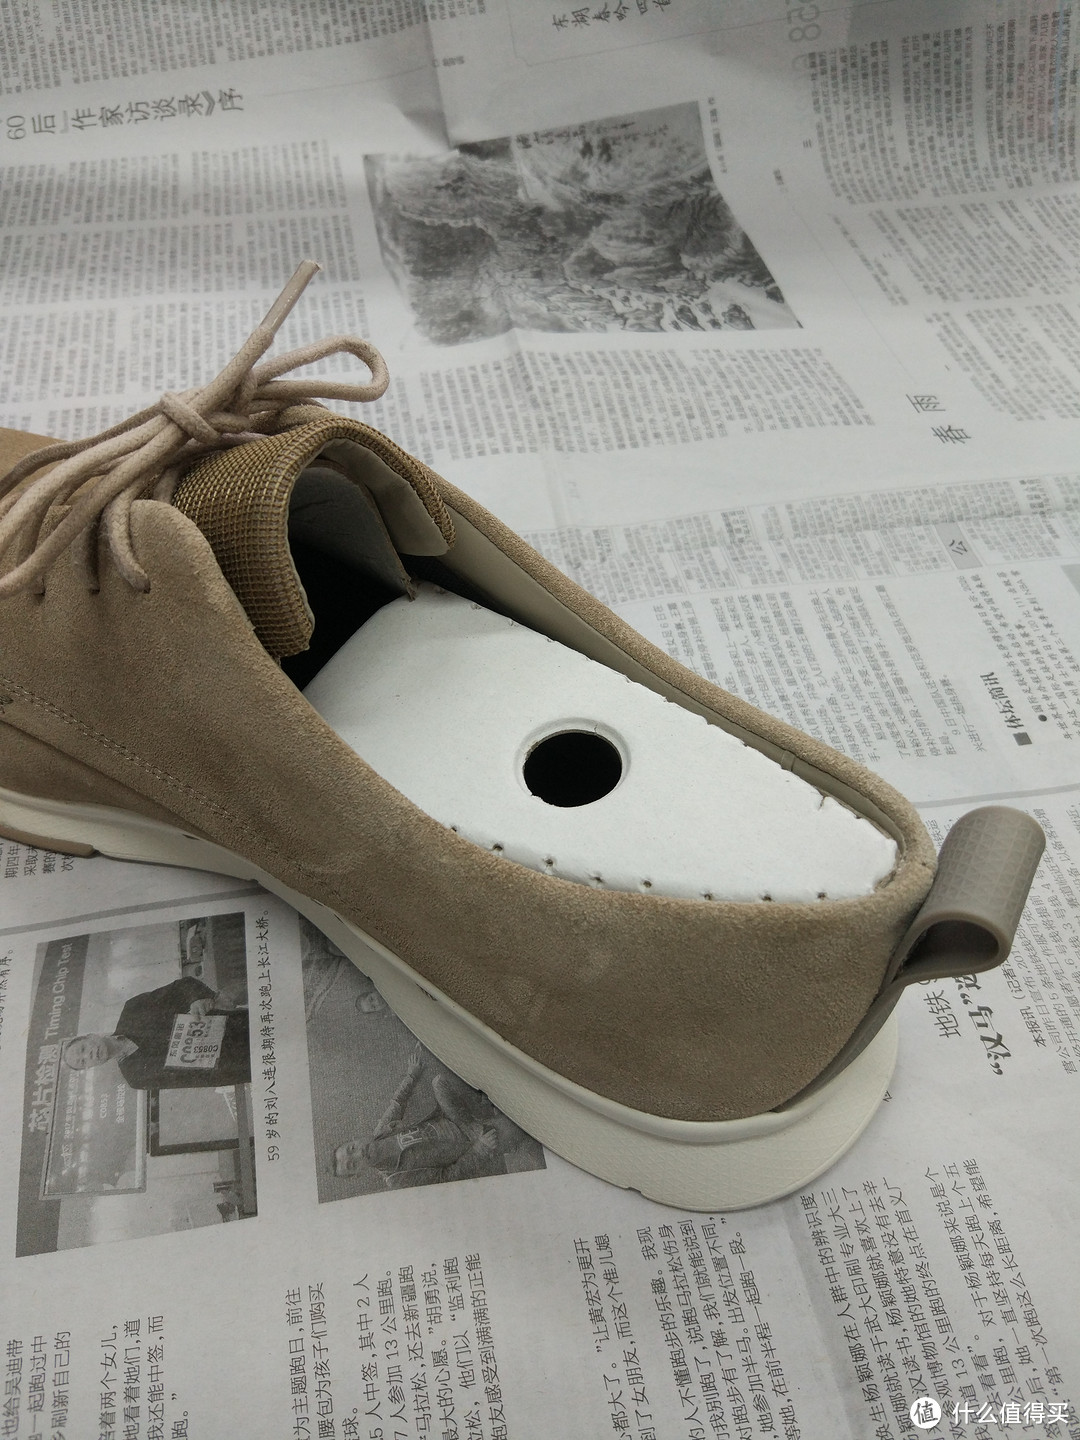 说好的皮鞋开箱怎么就变成了保护剂试验测评 3M Scotchgard 思高洁 绒面防污喷雾保护剂